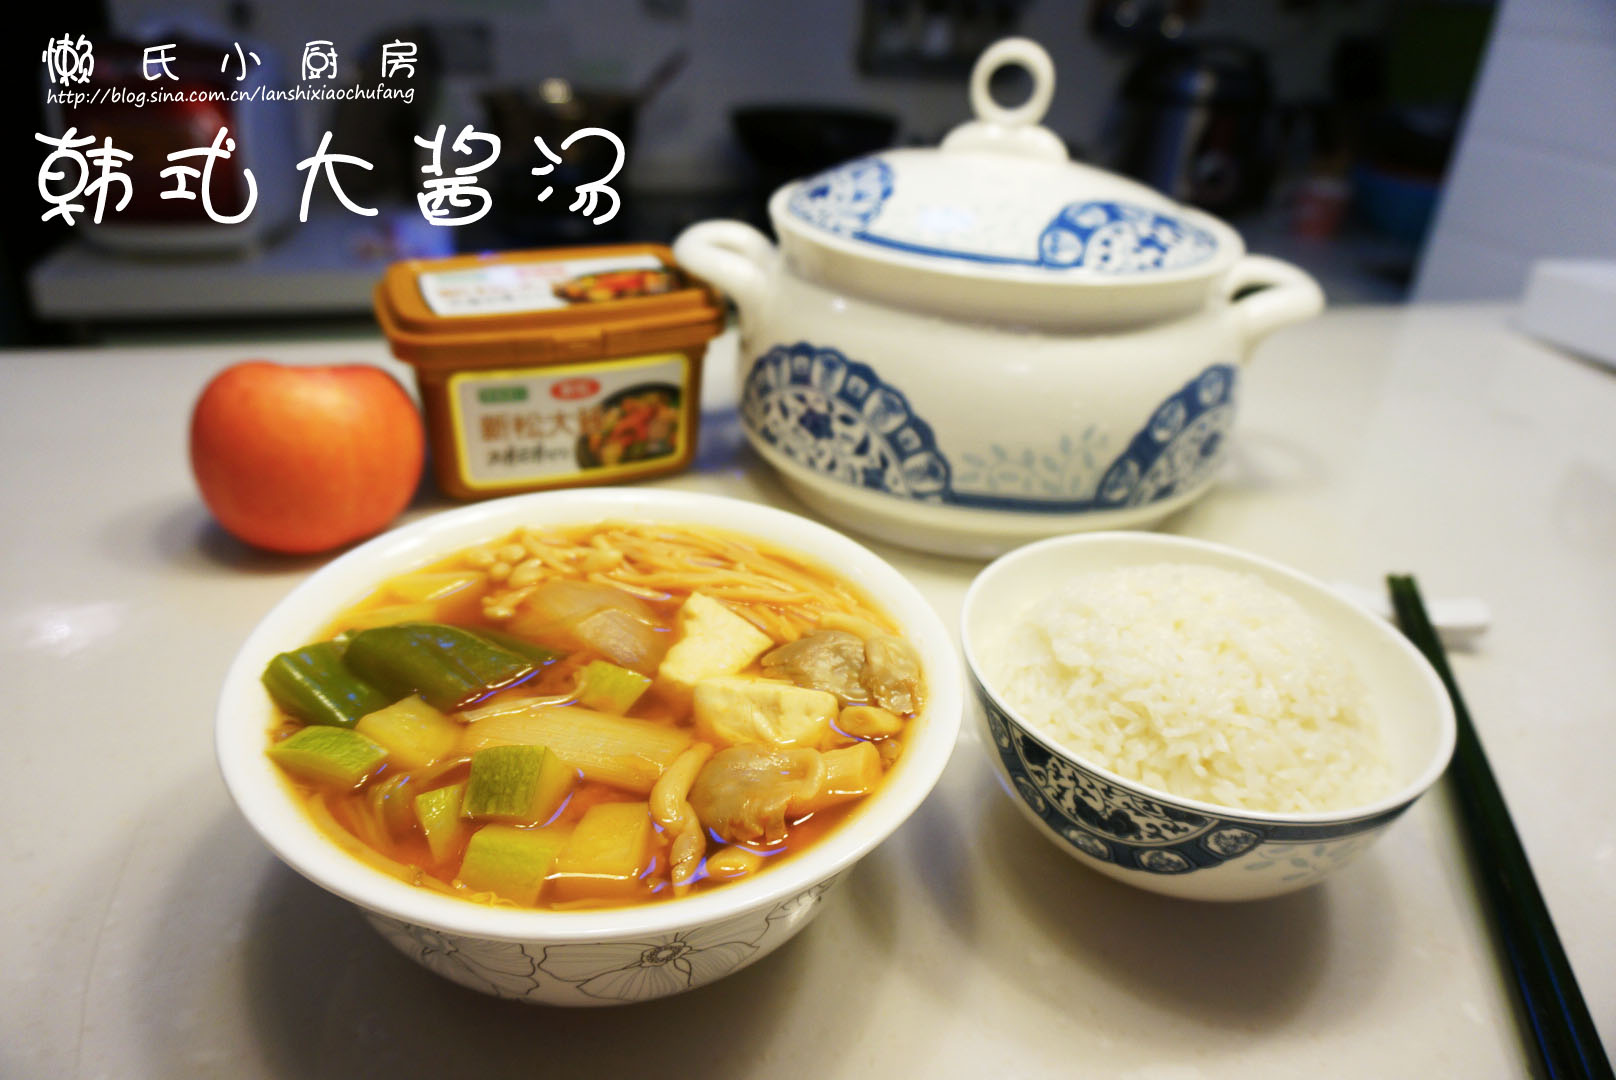 韩式大酱汤怎么做_韩式大酱汤的做法_呷饱饱_豆果美食